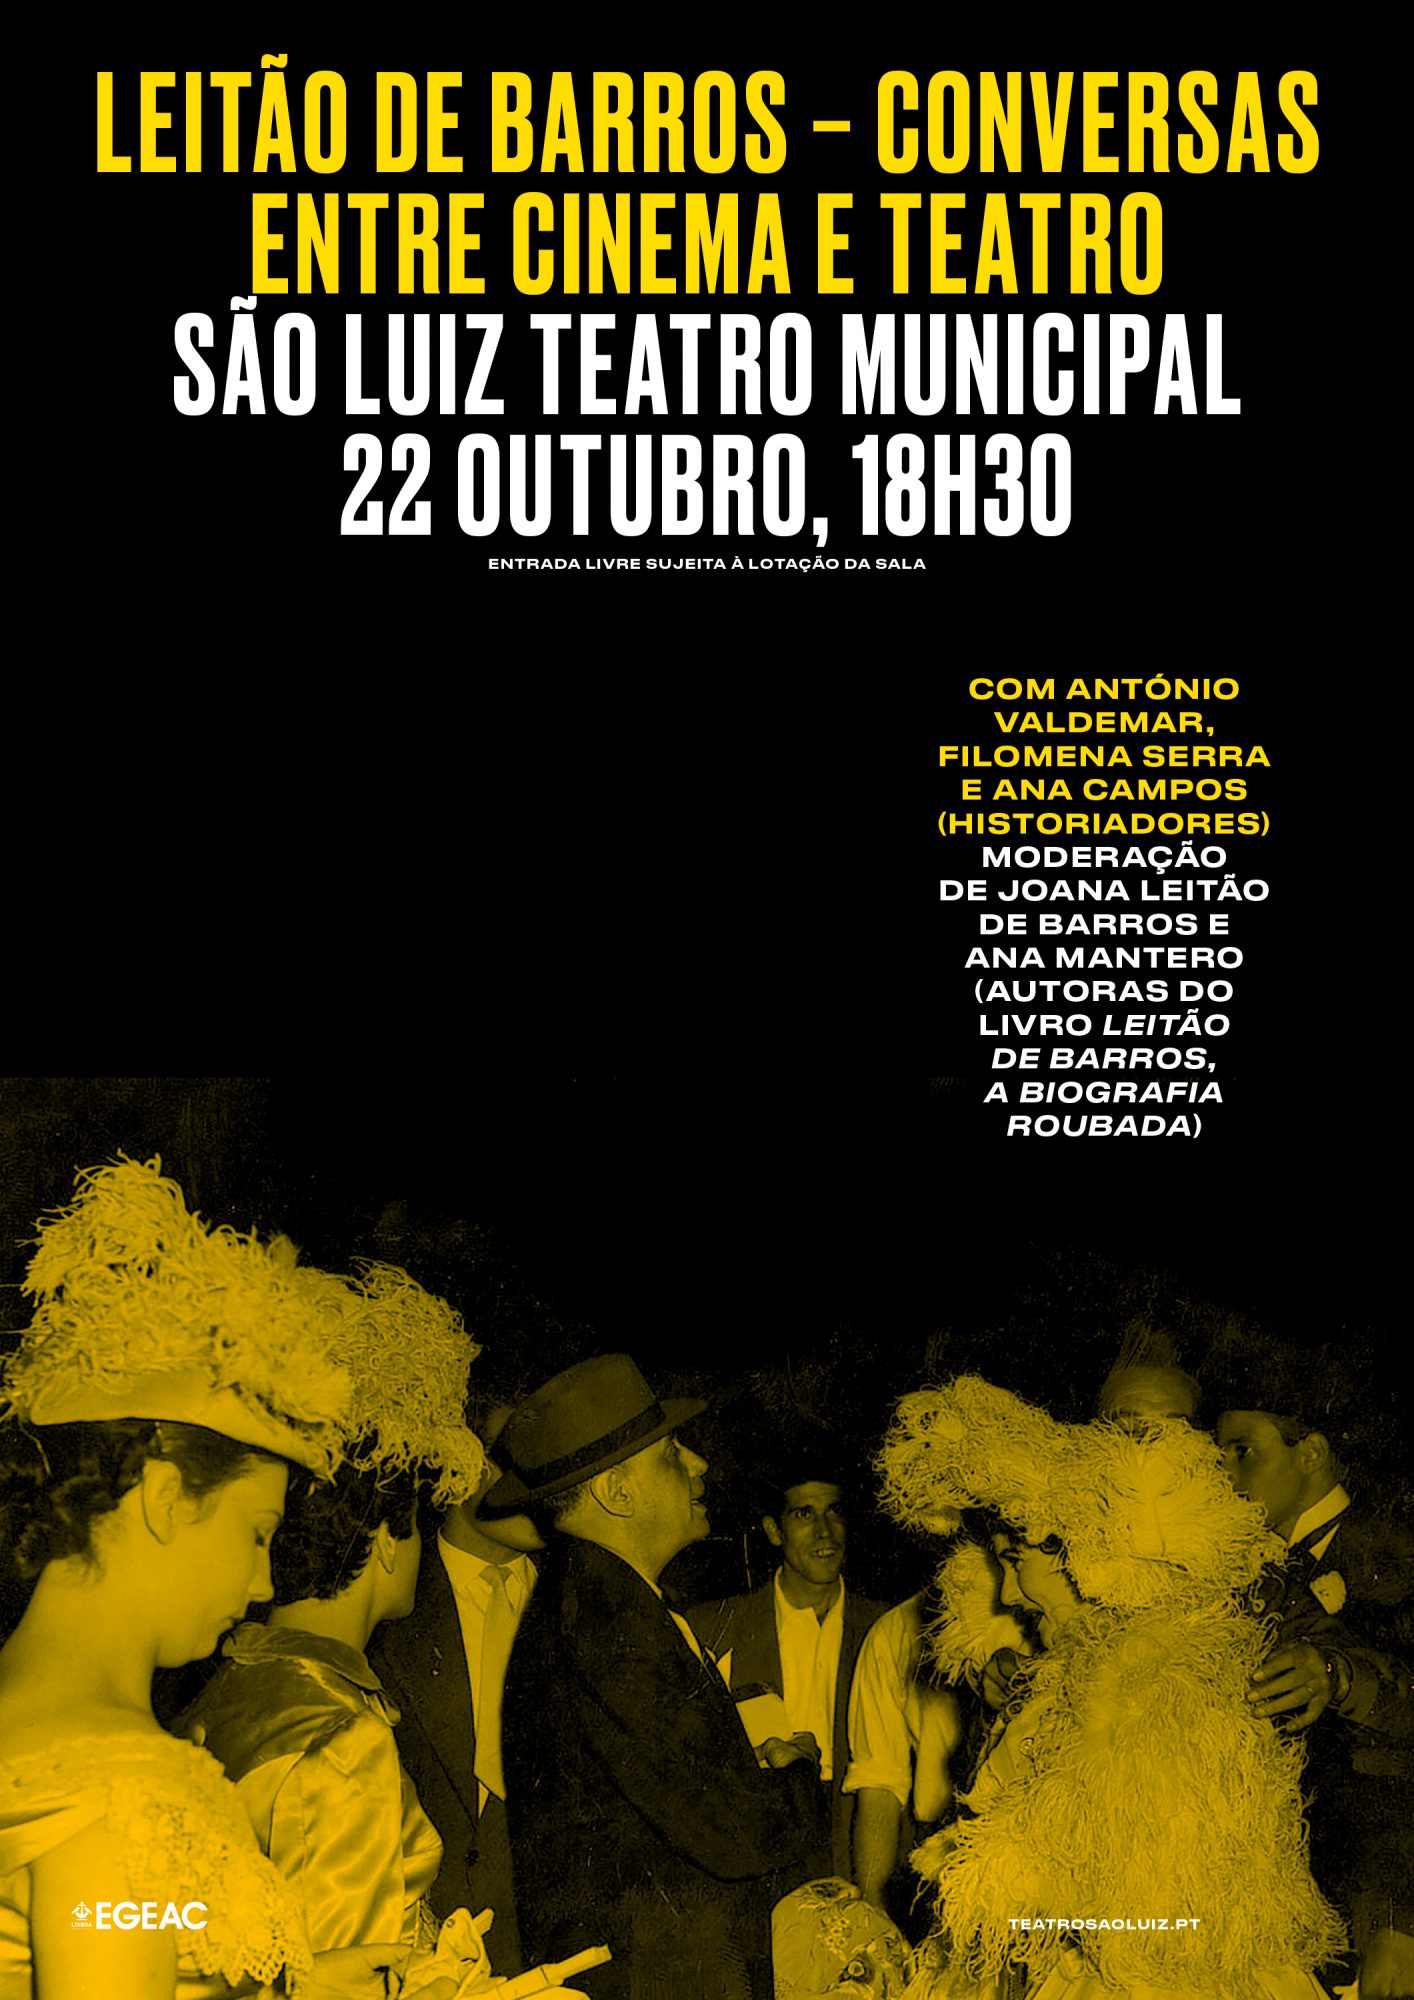 Leitão de Barros - Conversas entre Cinema e Teatro, outubro 2019